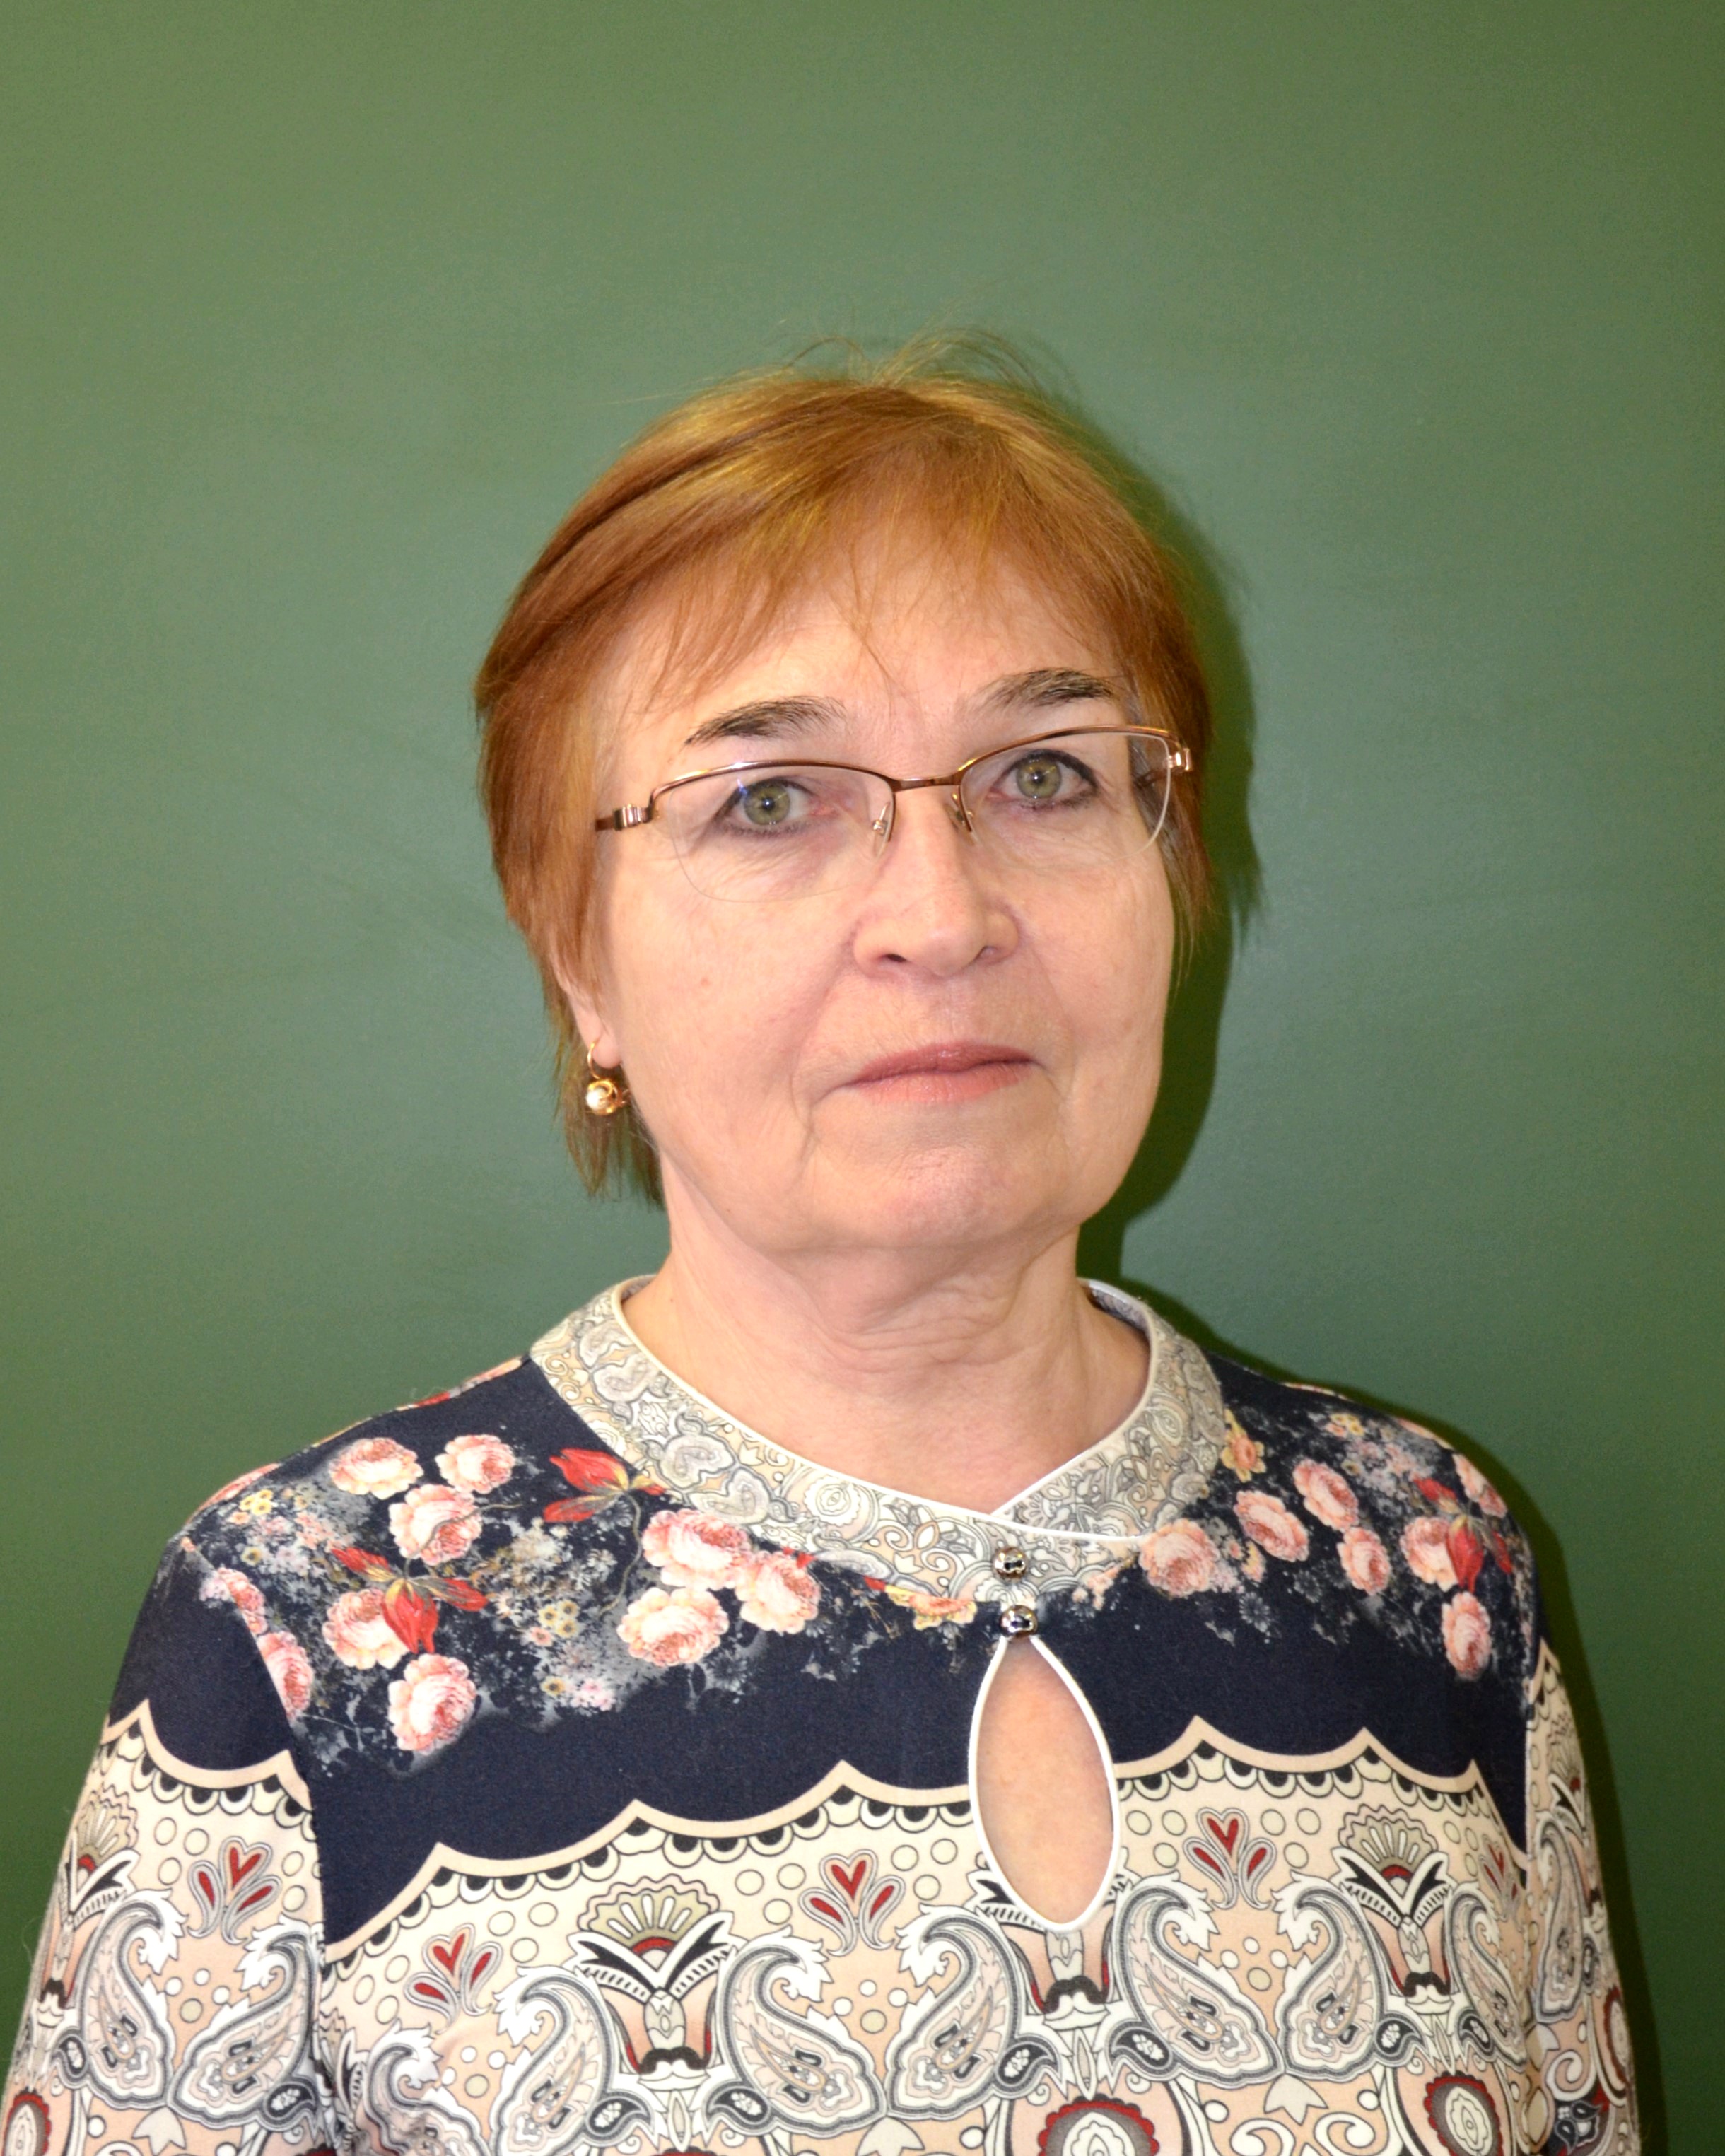 Сафонова Ирина Васильевна.